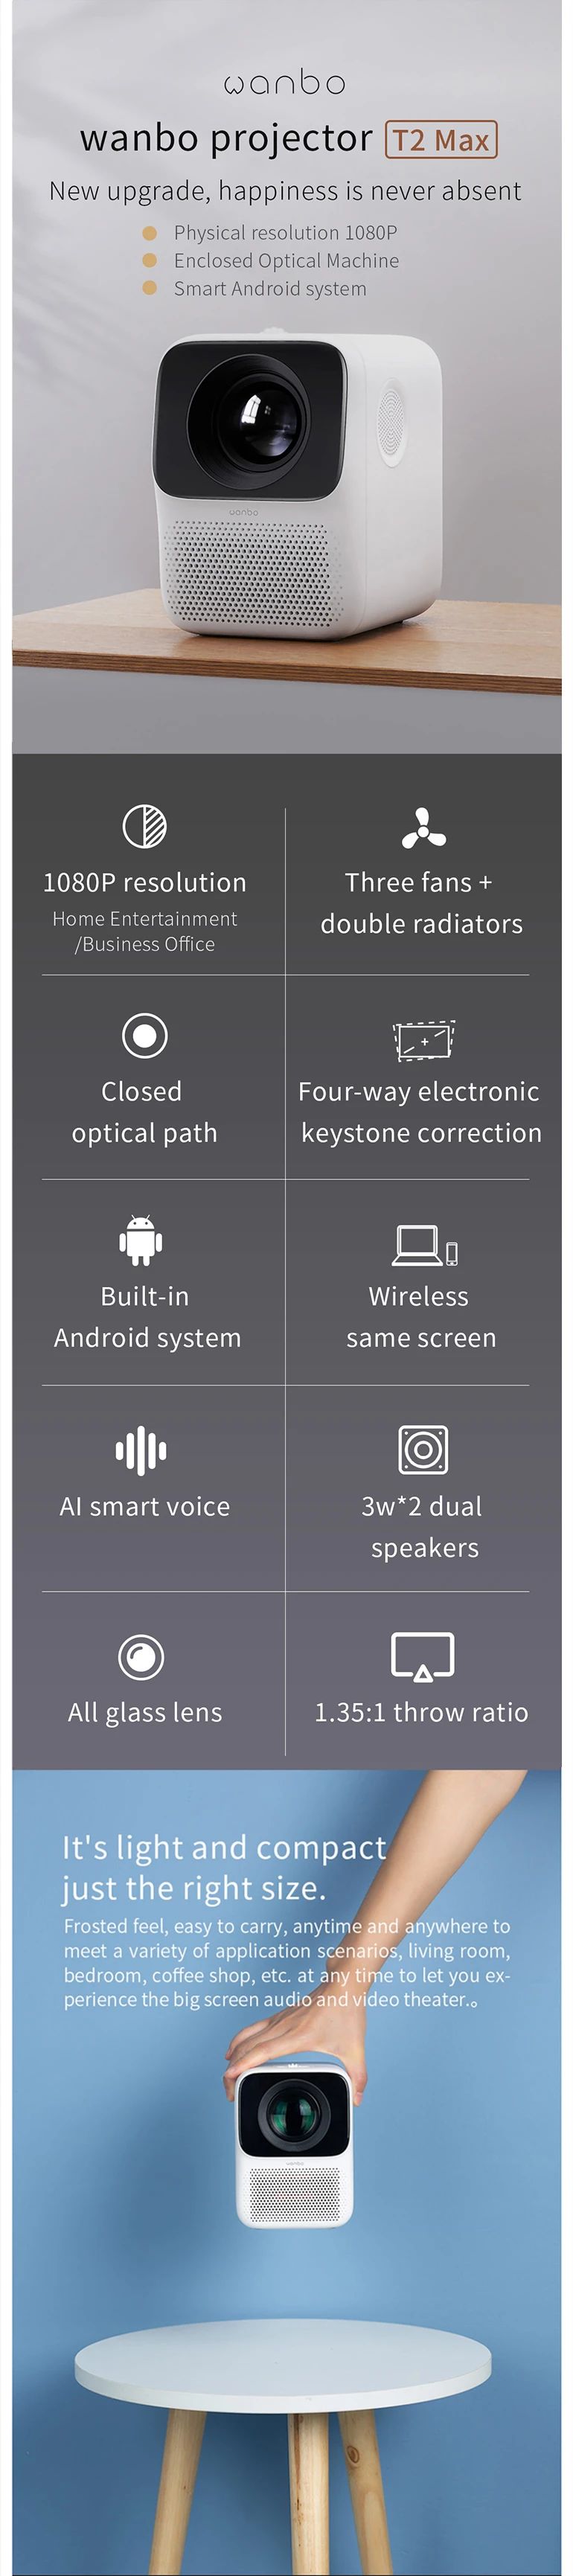 Xiaomi Wanbo T2 Max